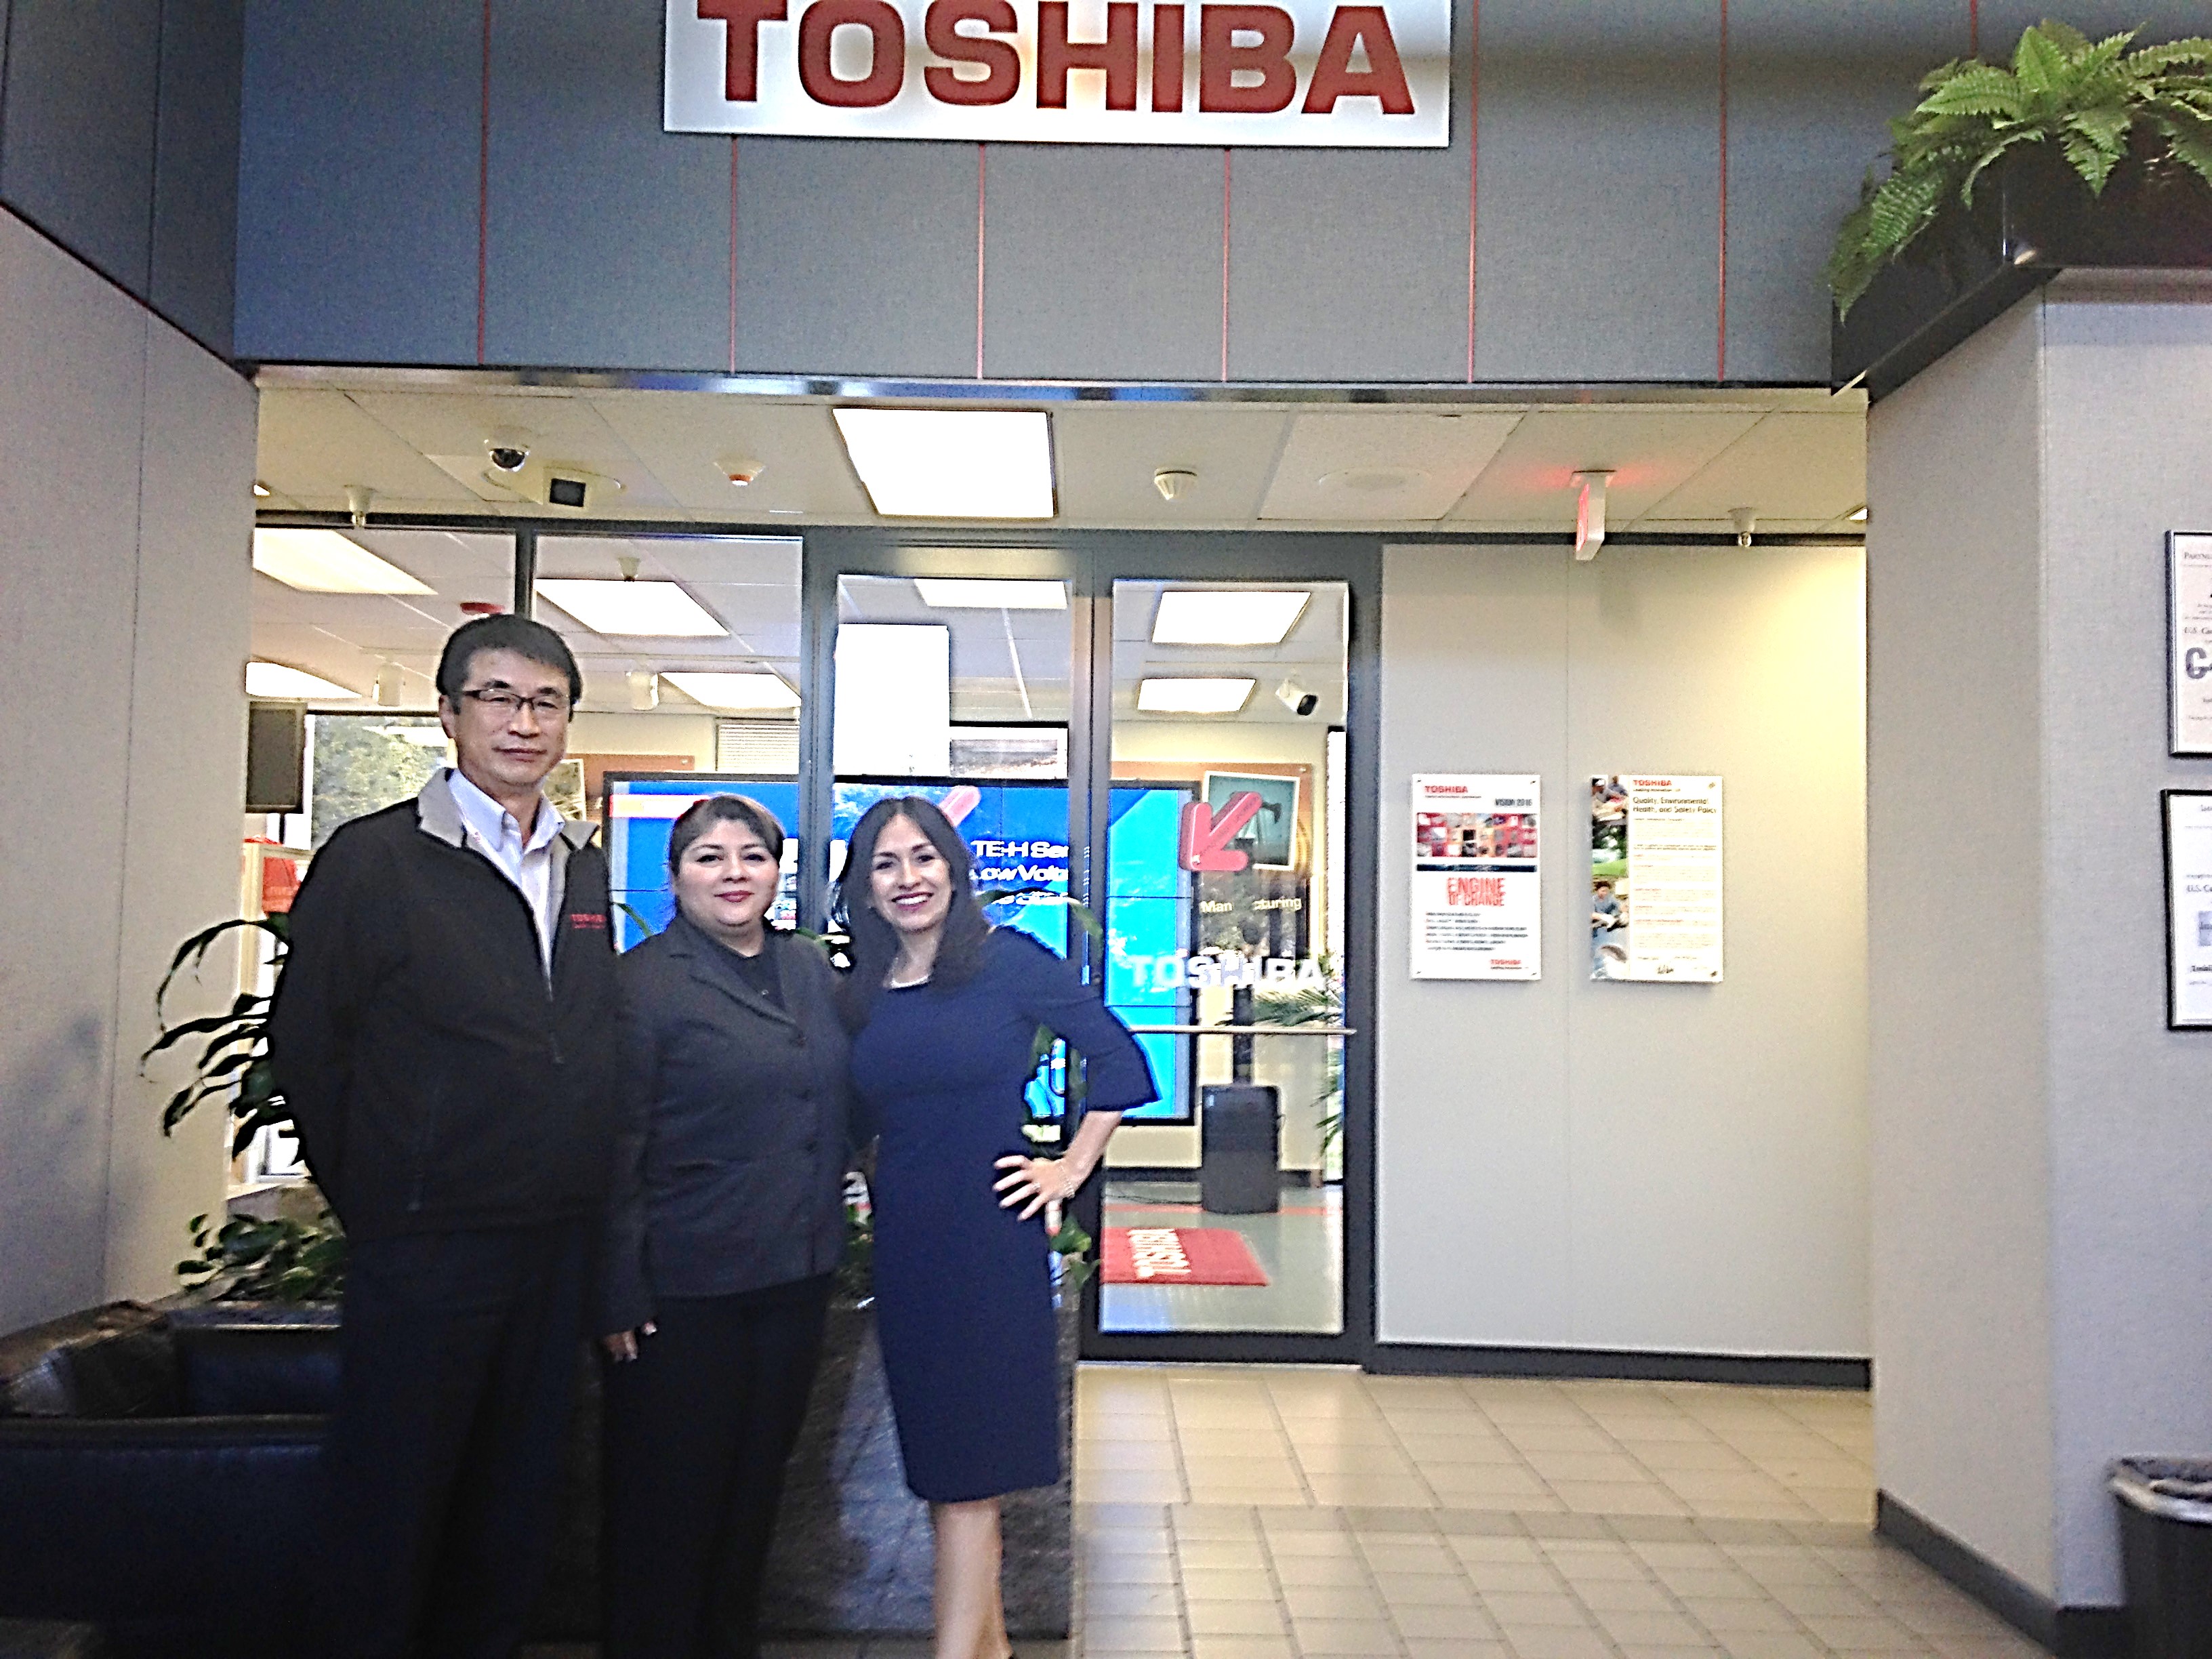 Miriam poses with Toshiba employees.